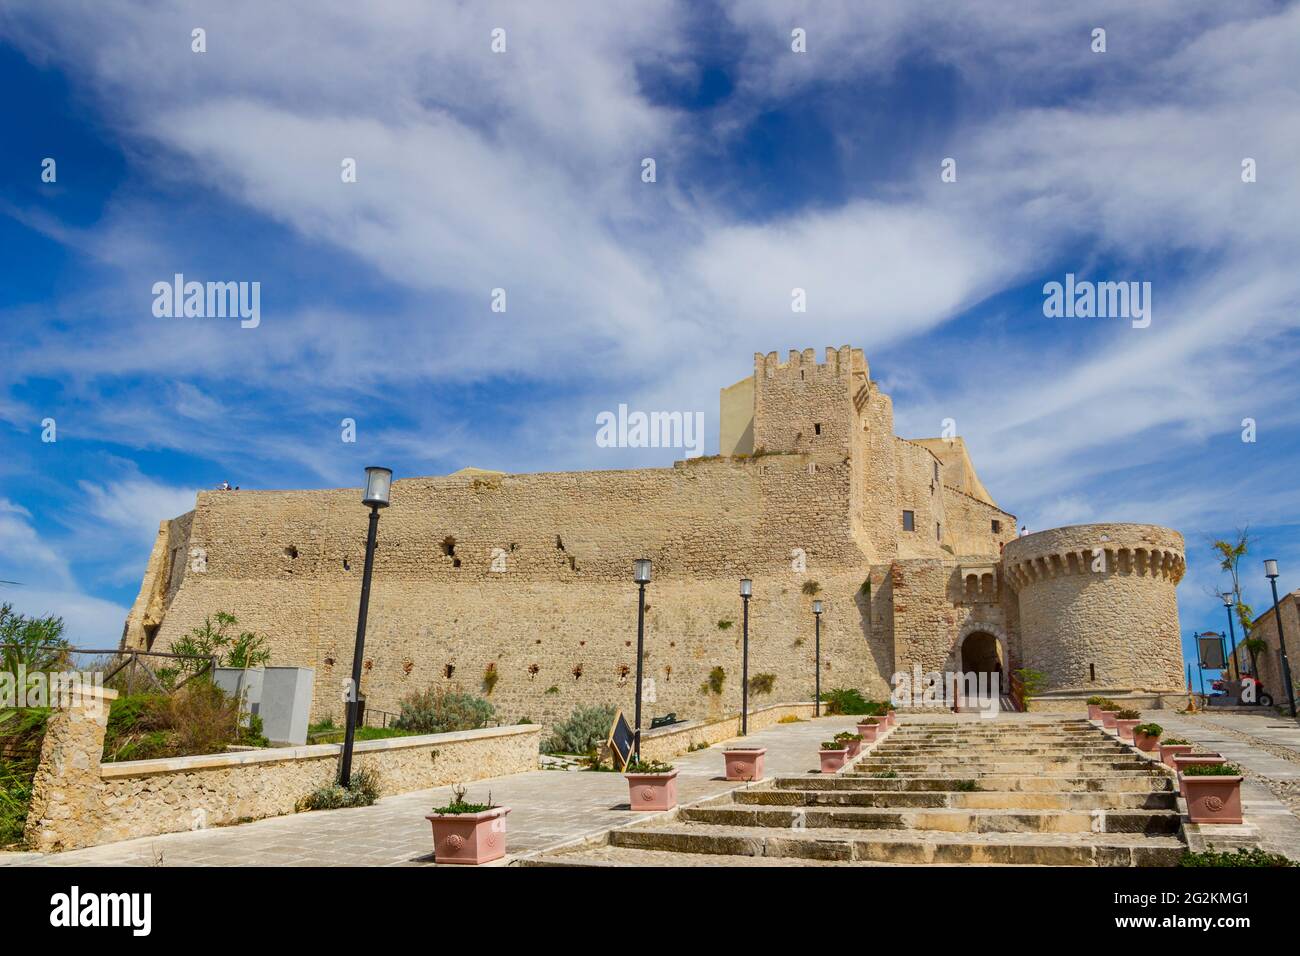 Mauern der befestigten Zitadelle auf der Insel San Nicola, auf den Tremiti-Inseln: Die Abtei von Santa Maria a Mare befestigte Komplex, Apulien, Italien. Stockfoto